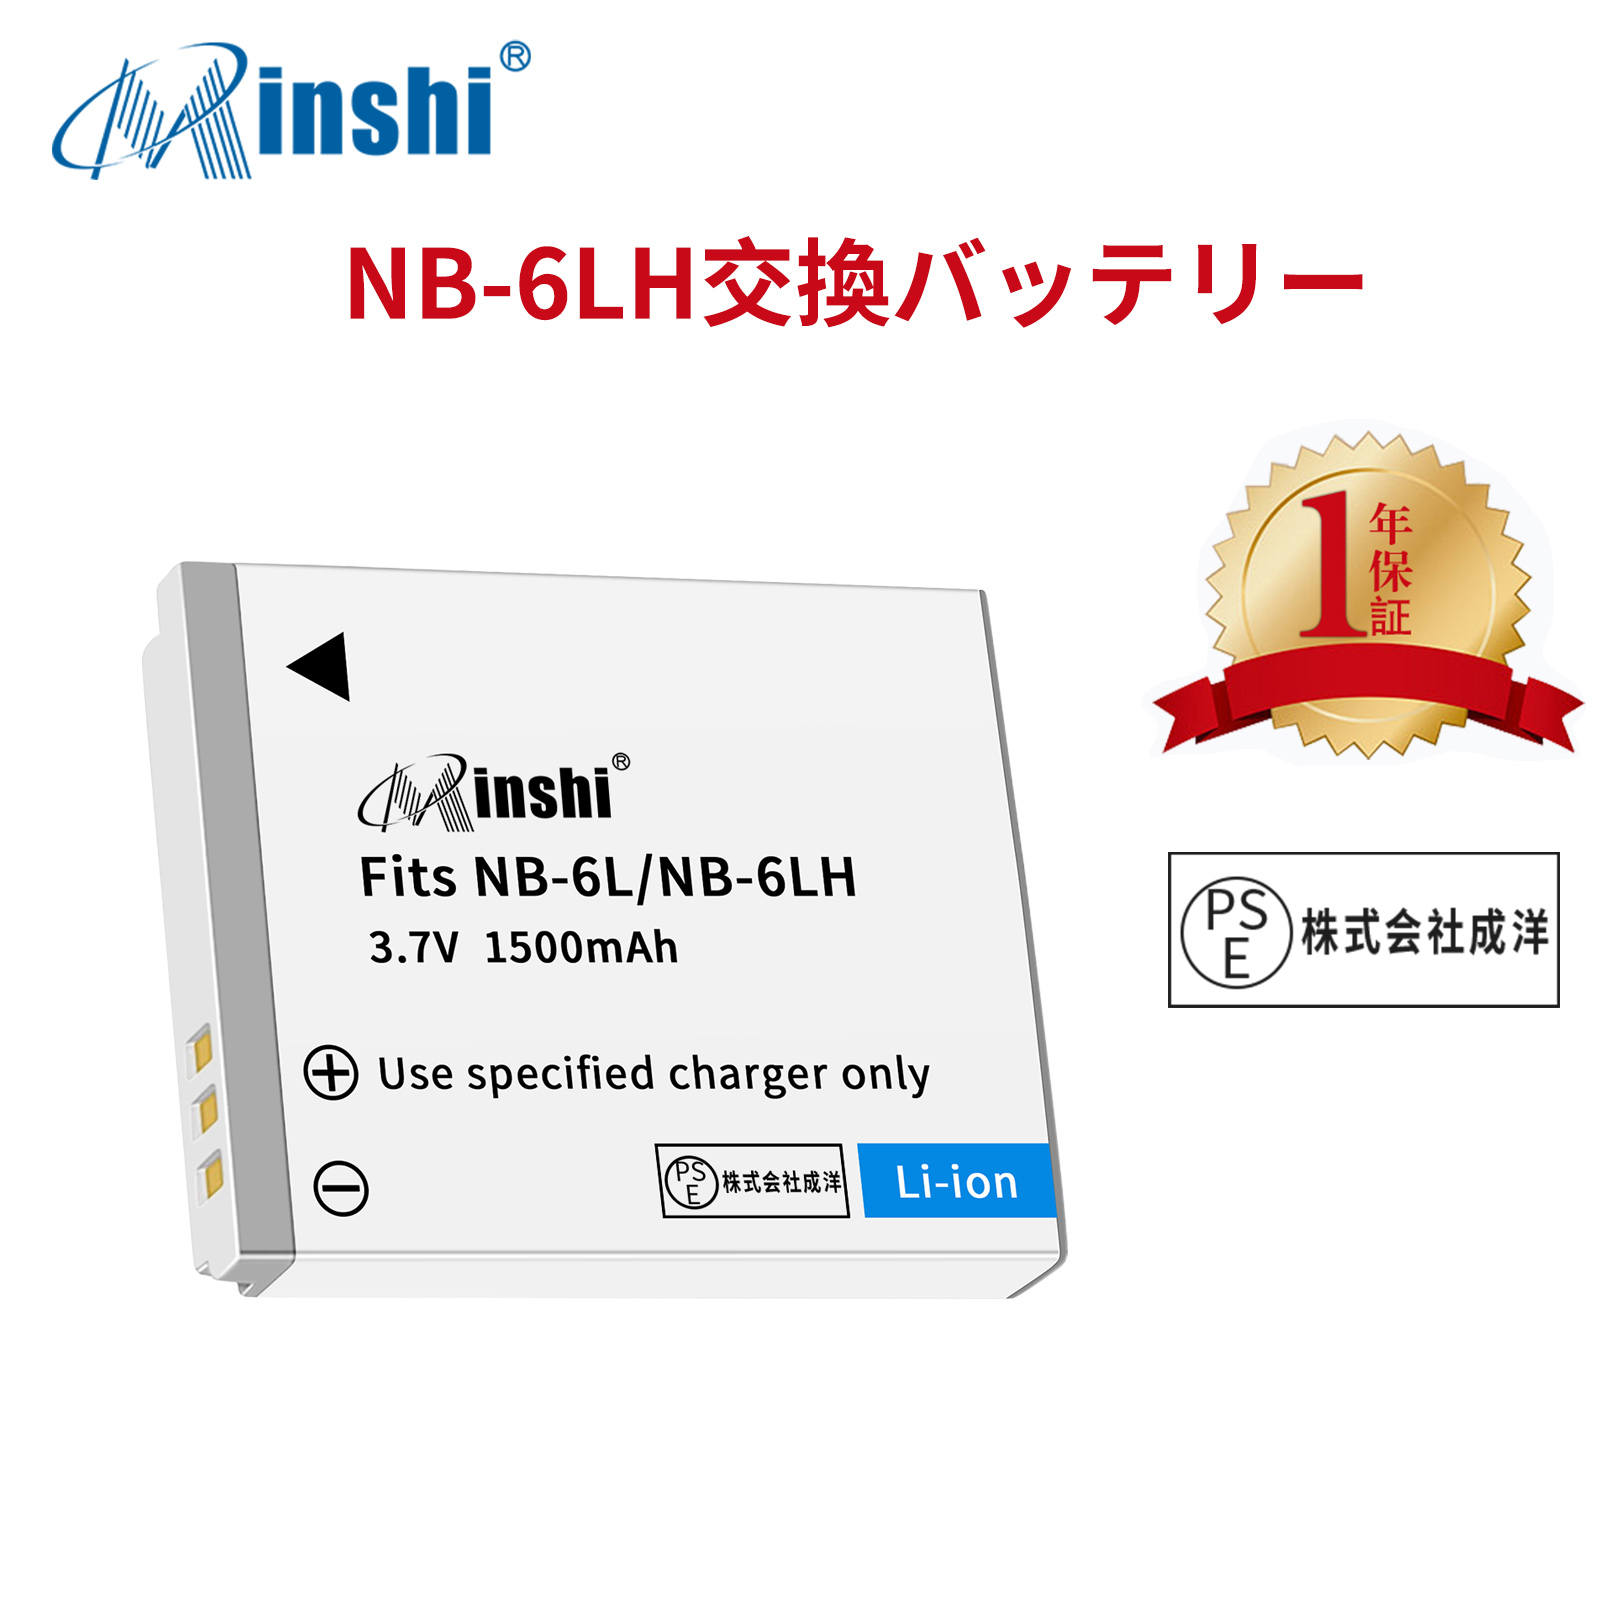 【1年保証】minshi Canon NB-6L IXUS 200 IS NB-6L【1500mAh 3.7V】PSE認定済 高品質 NB-6LH 交換用バッテリー